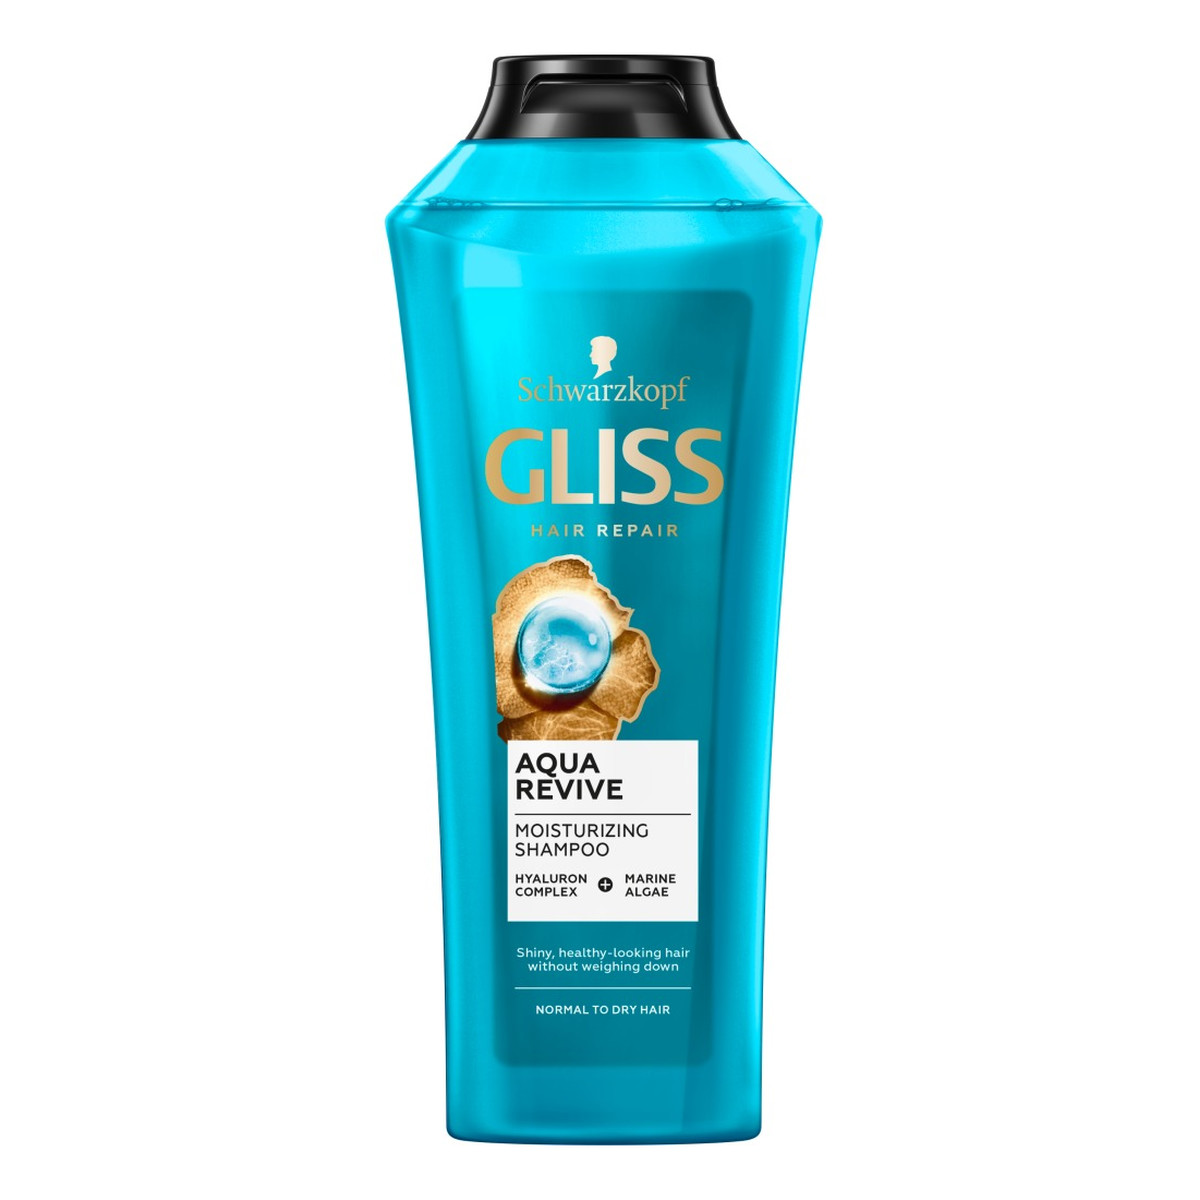 Gliss Aqua revive szampon do włosów suchych i normalnych 400ml